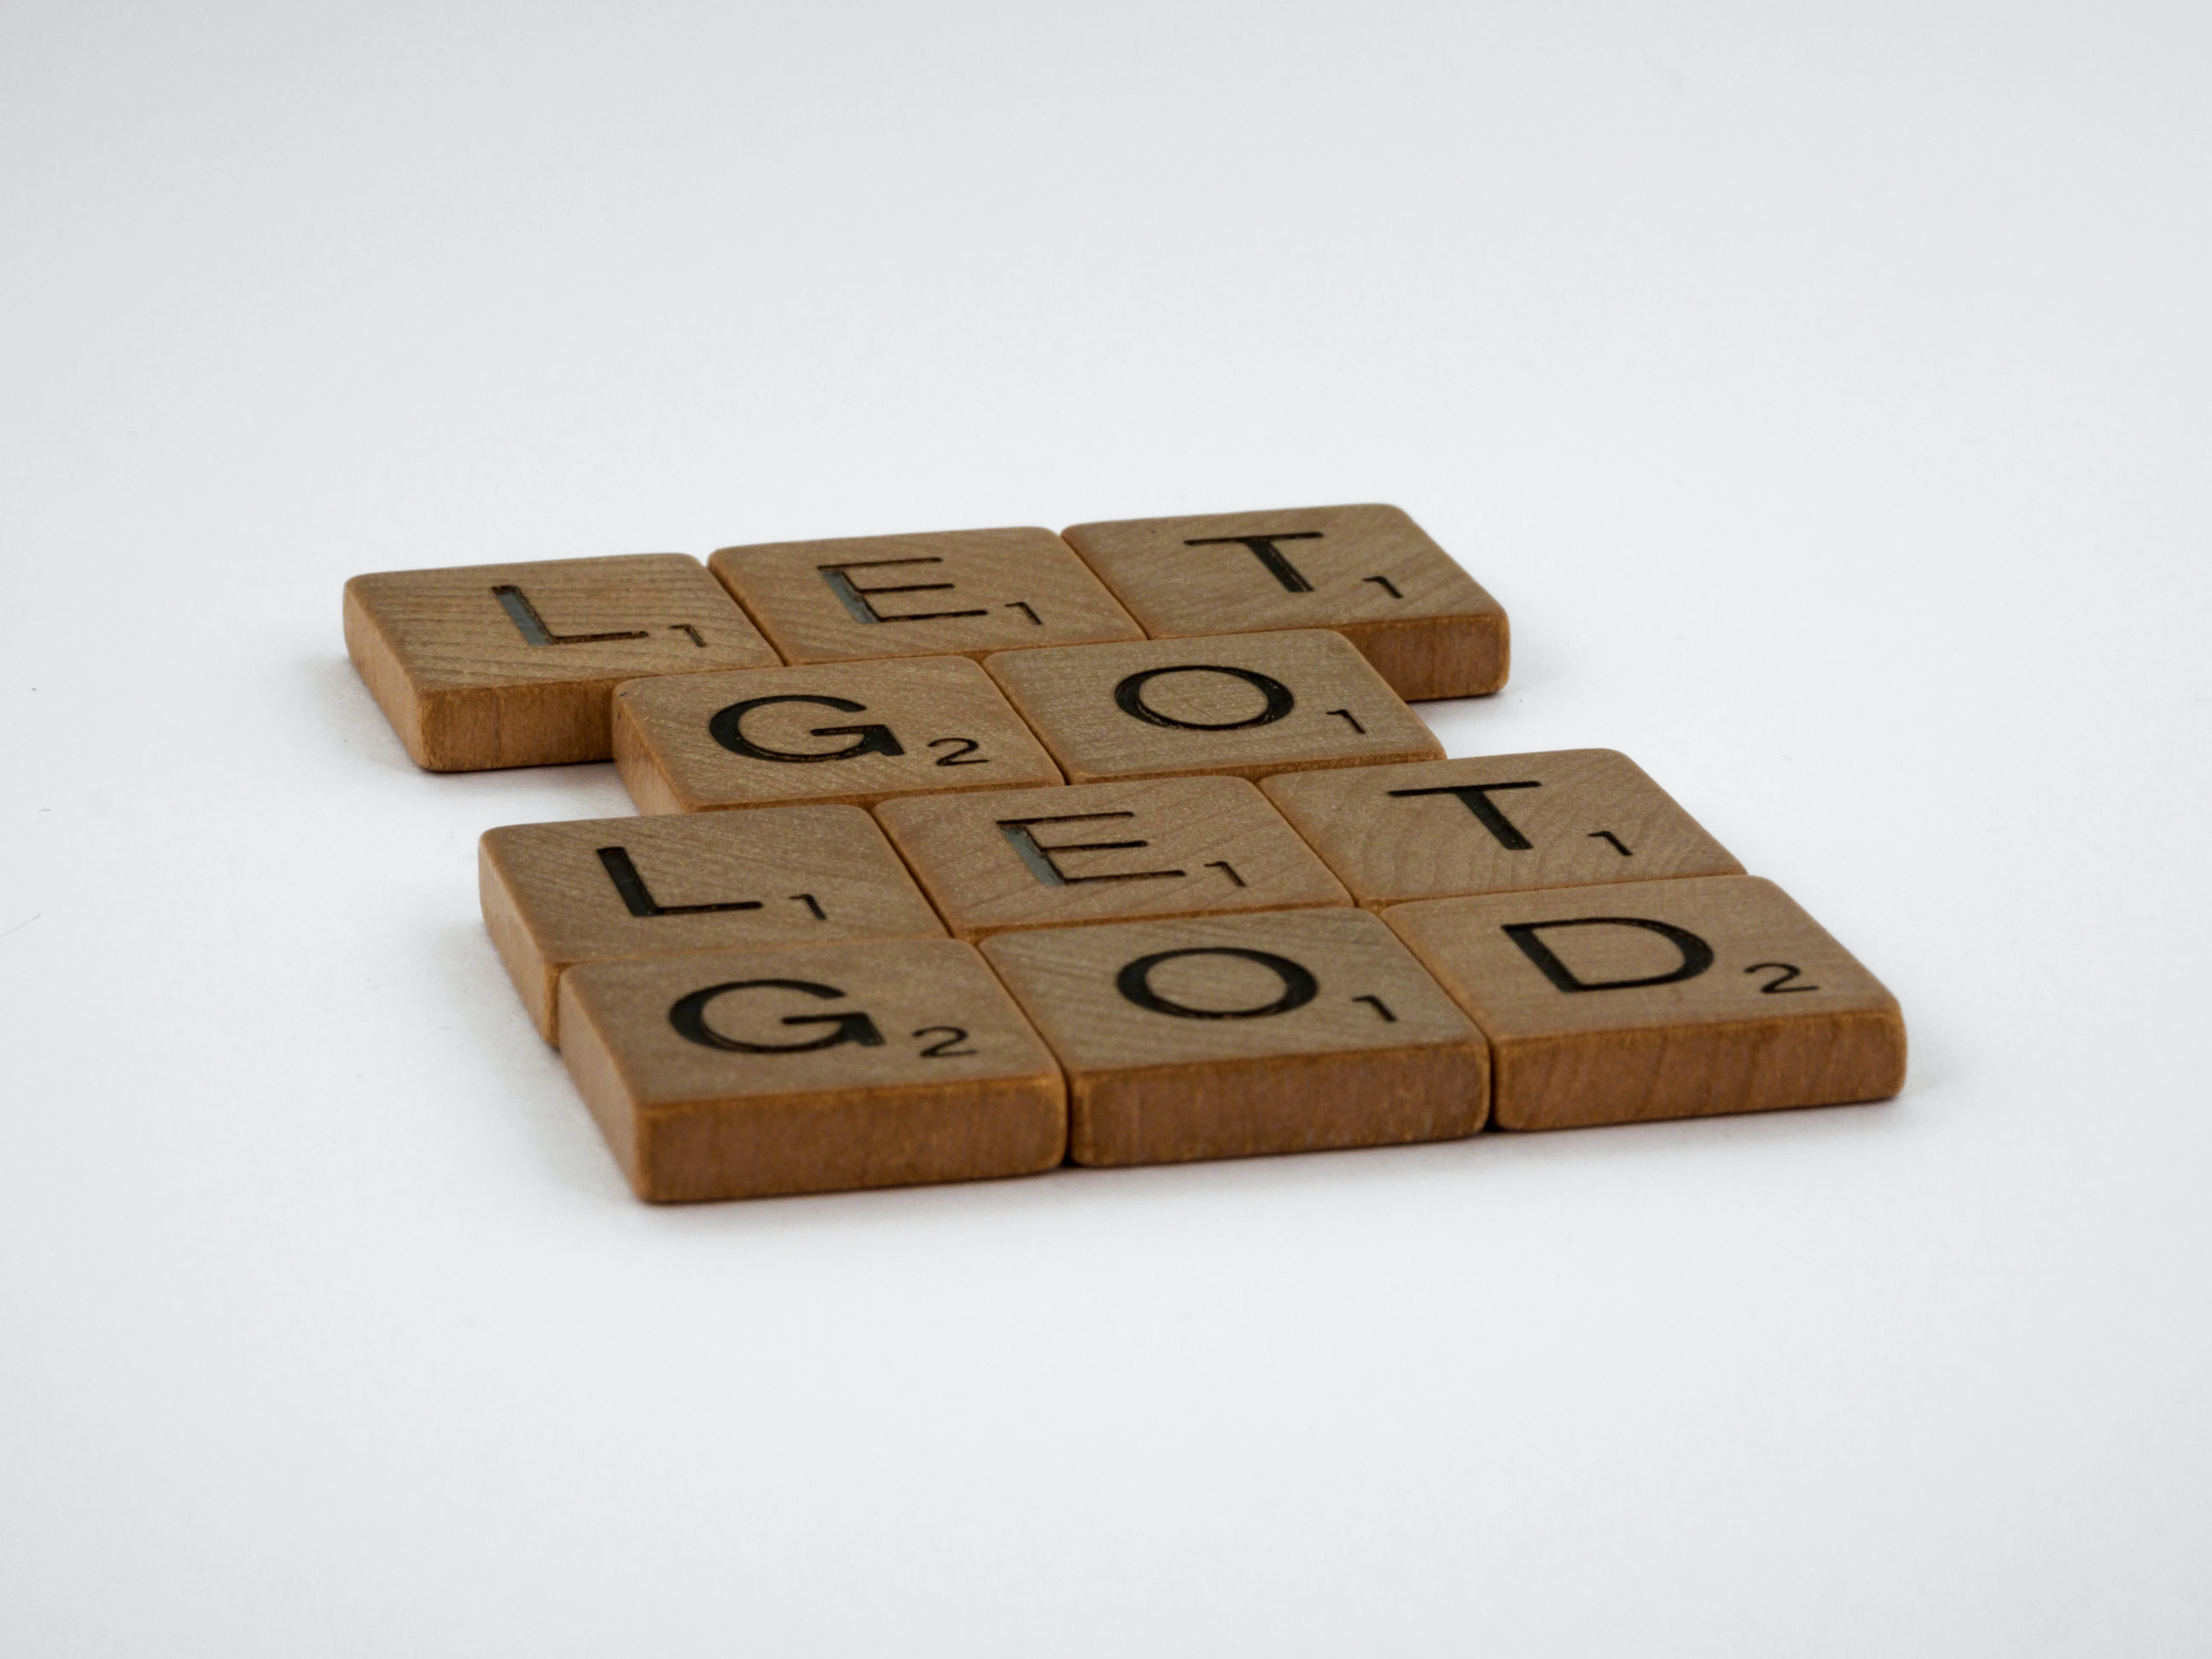 Let Go  Let God